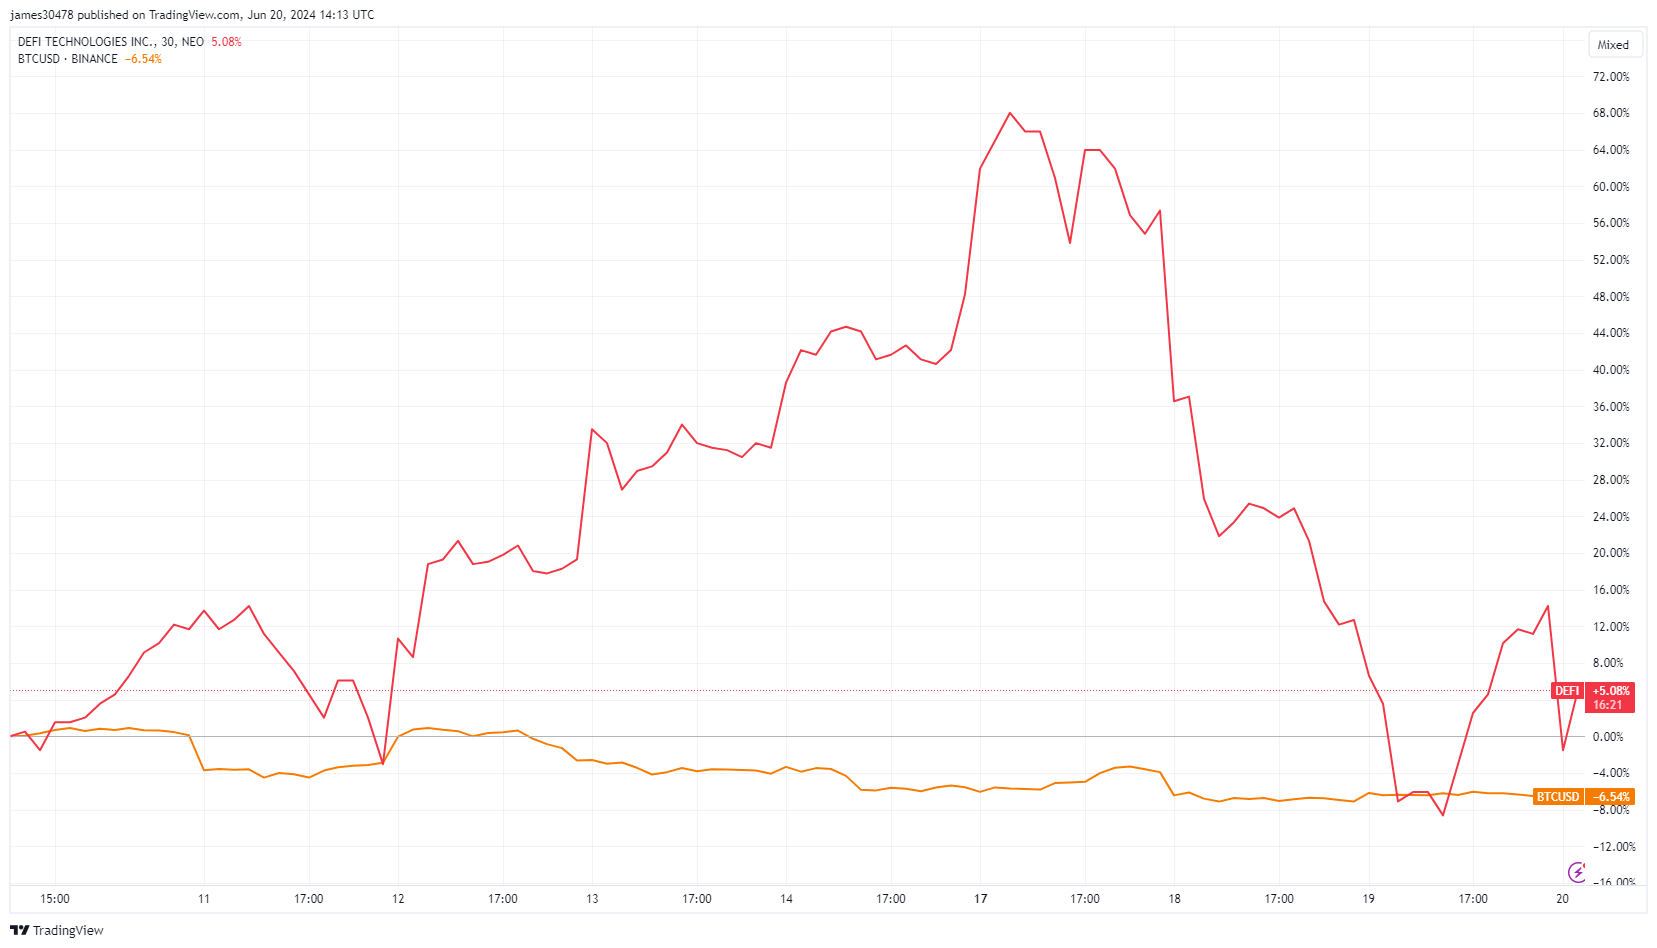 DeFi Technologies vs. BTC since the announcement: (Source: TradingView)